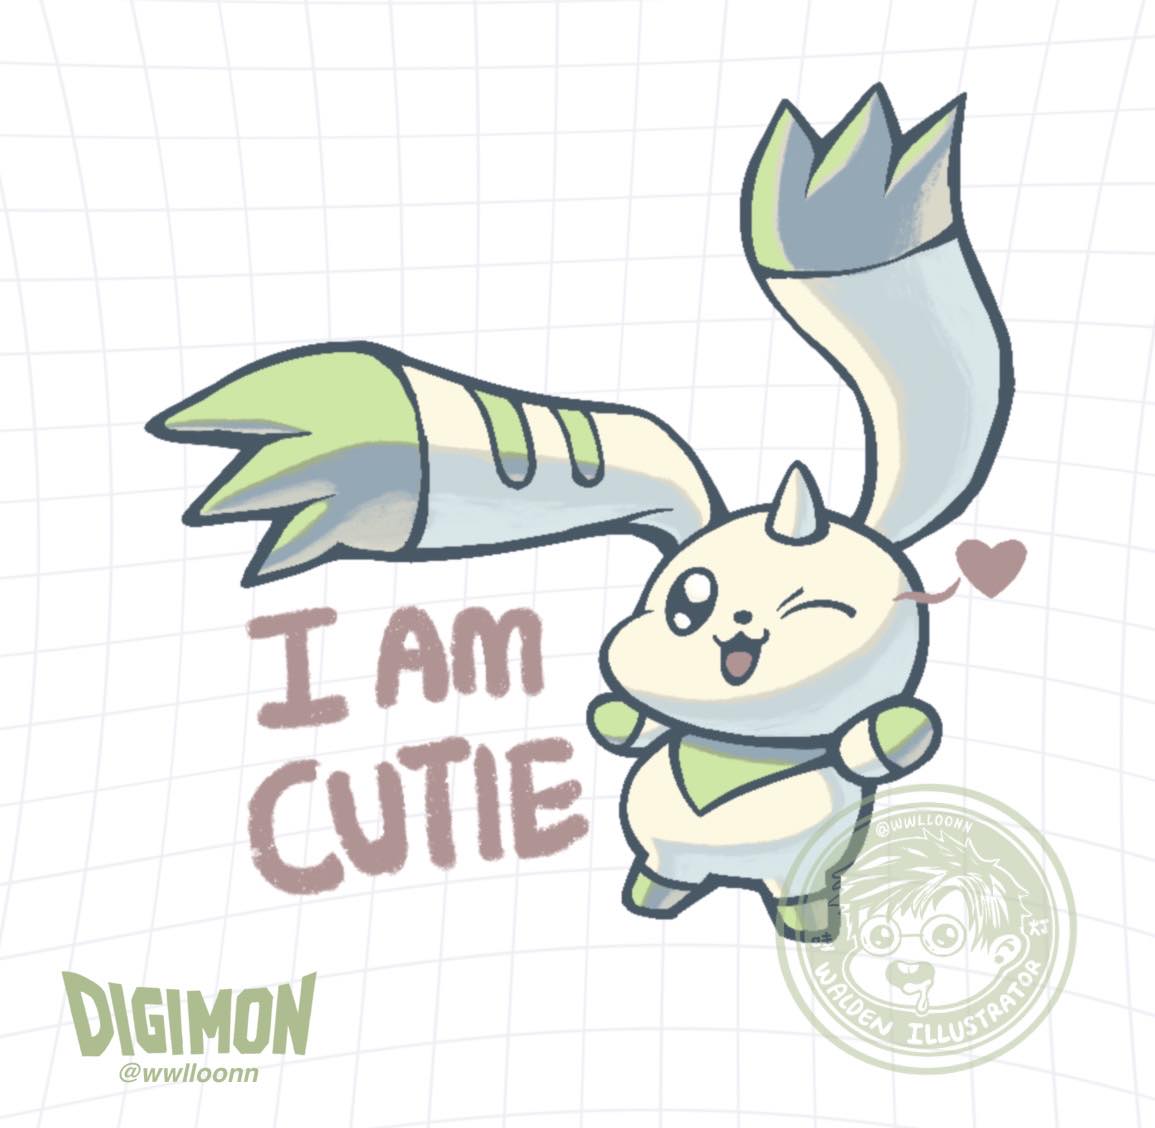 我很可爱! I am cute! 
#terriermon #Digimon   #digitalart #ProcreateArt #digimonfanart #digimon #デジモン